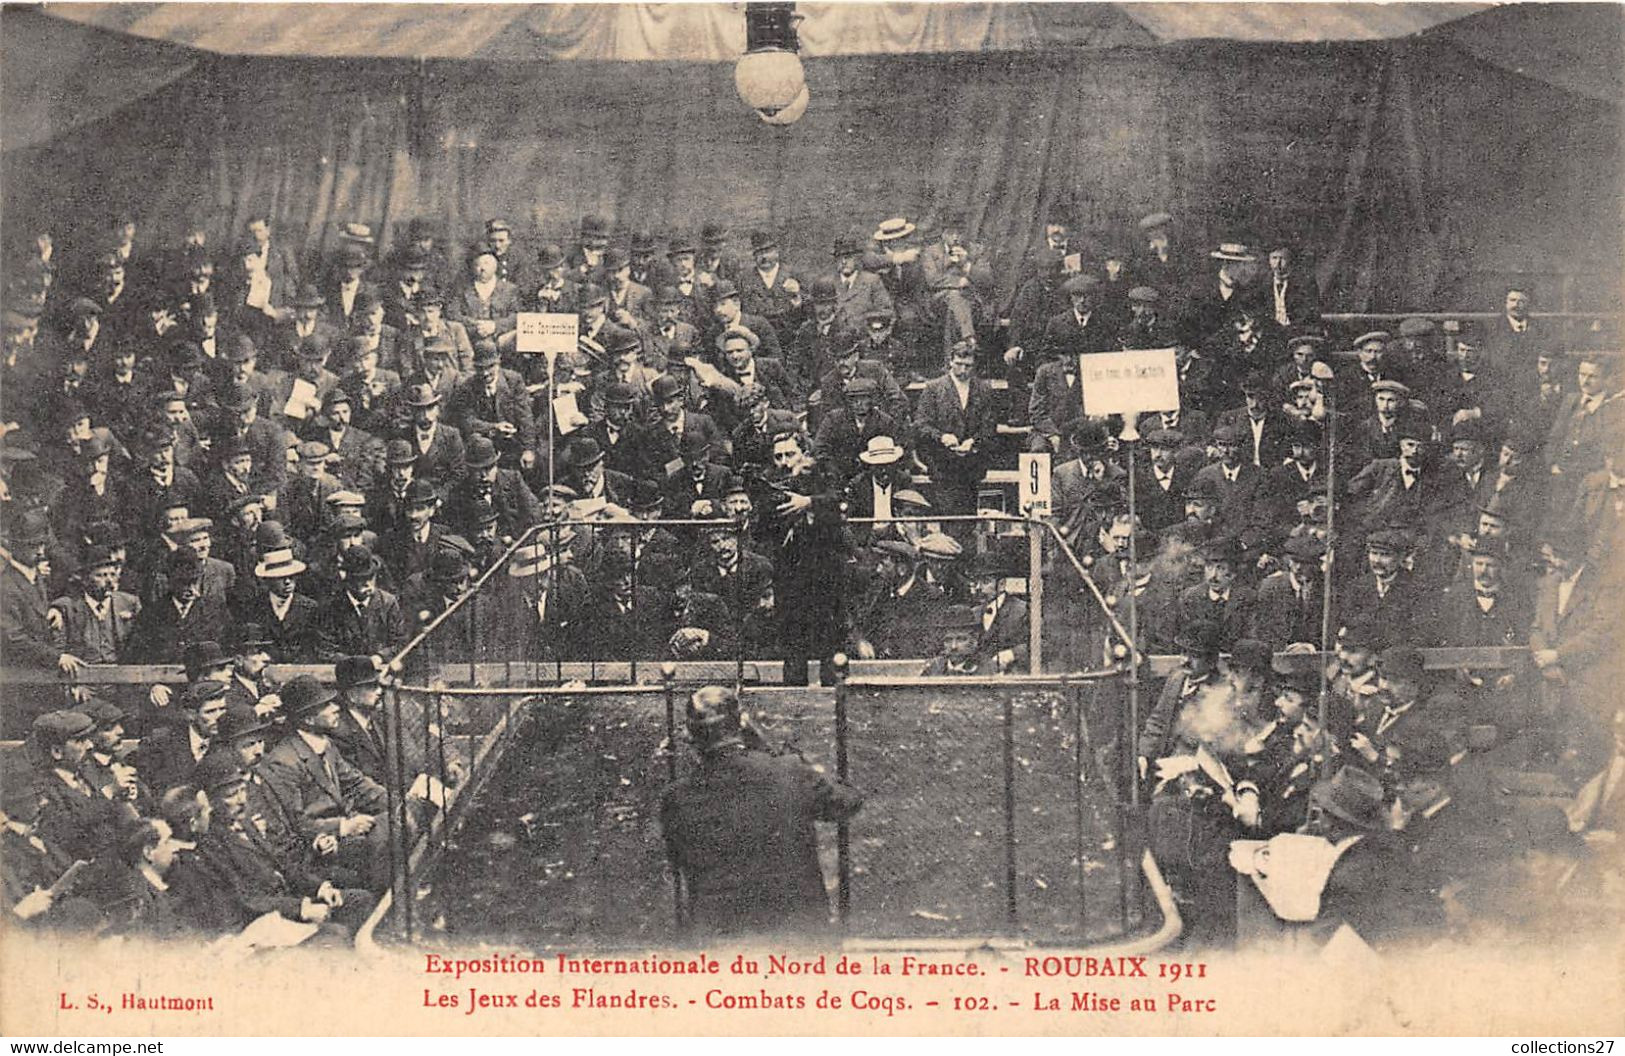 59-ROUBAIX- 1911, EXPOSITION INTERNATIONALE DU NORD DE LA FRANCE, COMBATS DE COQS , LA MISE AU PARC - Roubaix